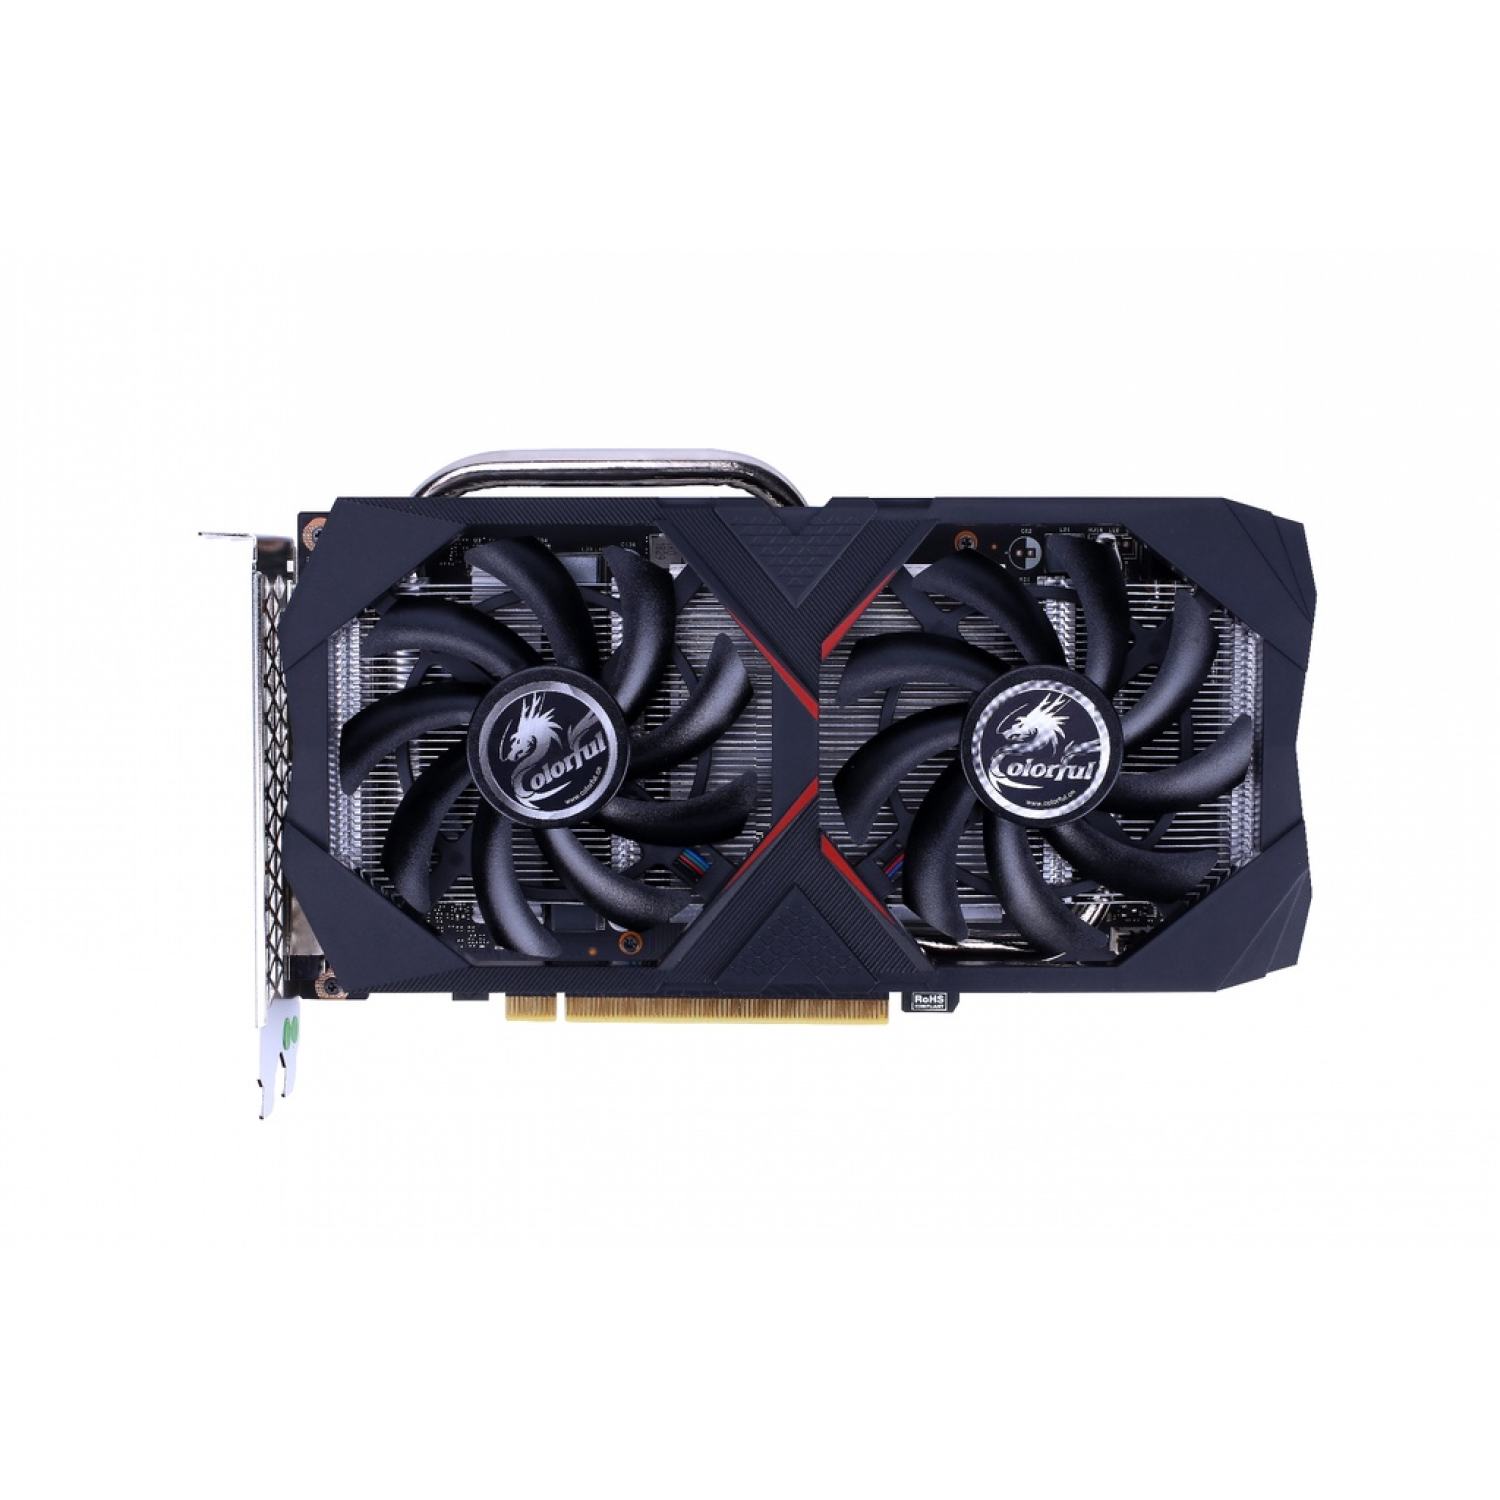 Card Màn Hình Colorful GeForce GTX 1660 SUPER NB 6G V2-V - Hàng Chính Hãng